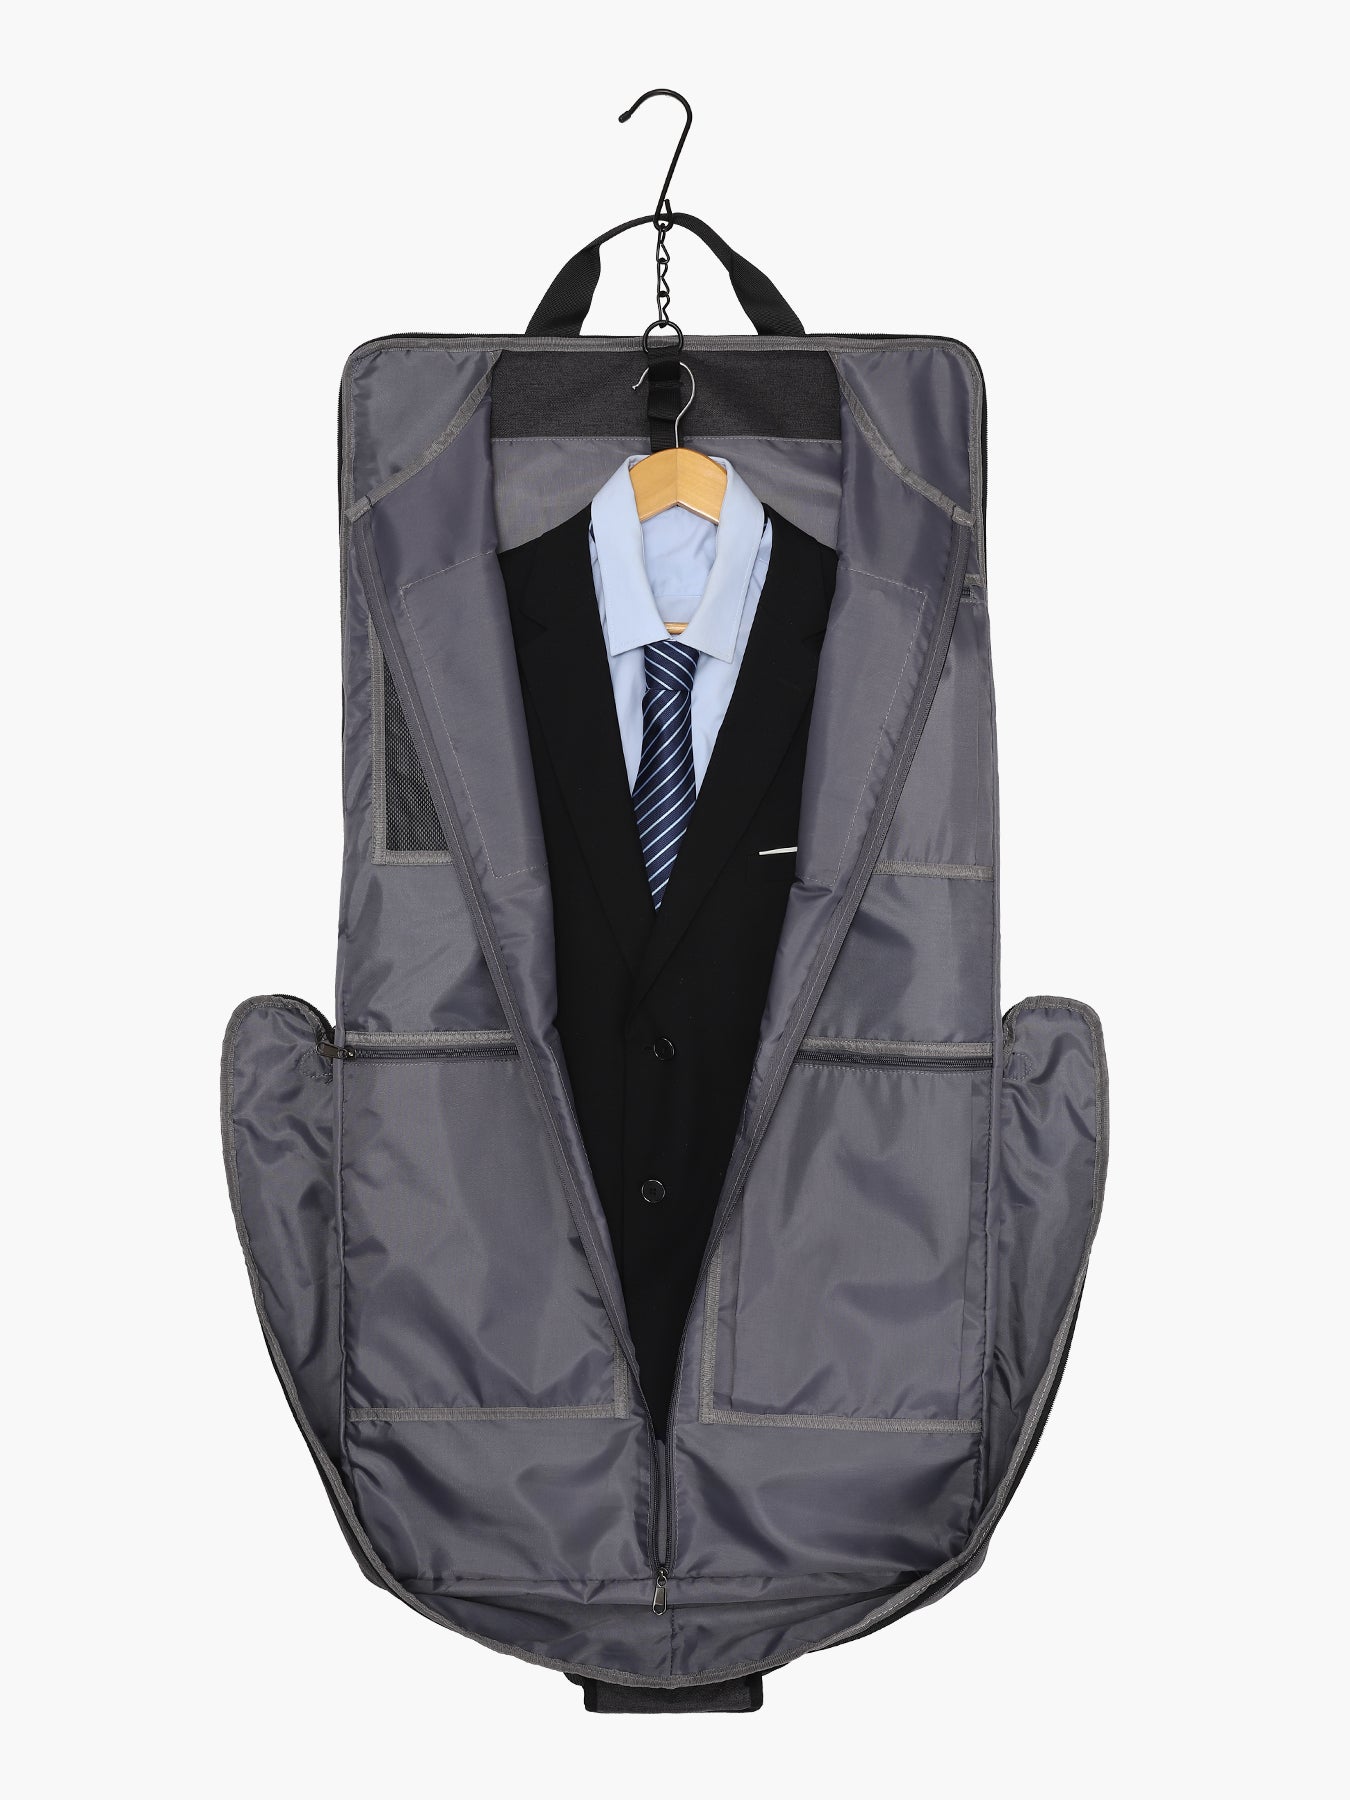 MODOKER Garment Bags for Men Women Business Travel